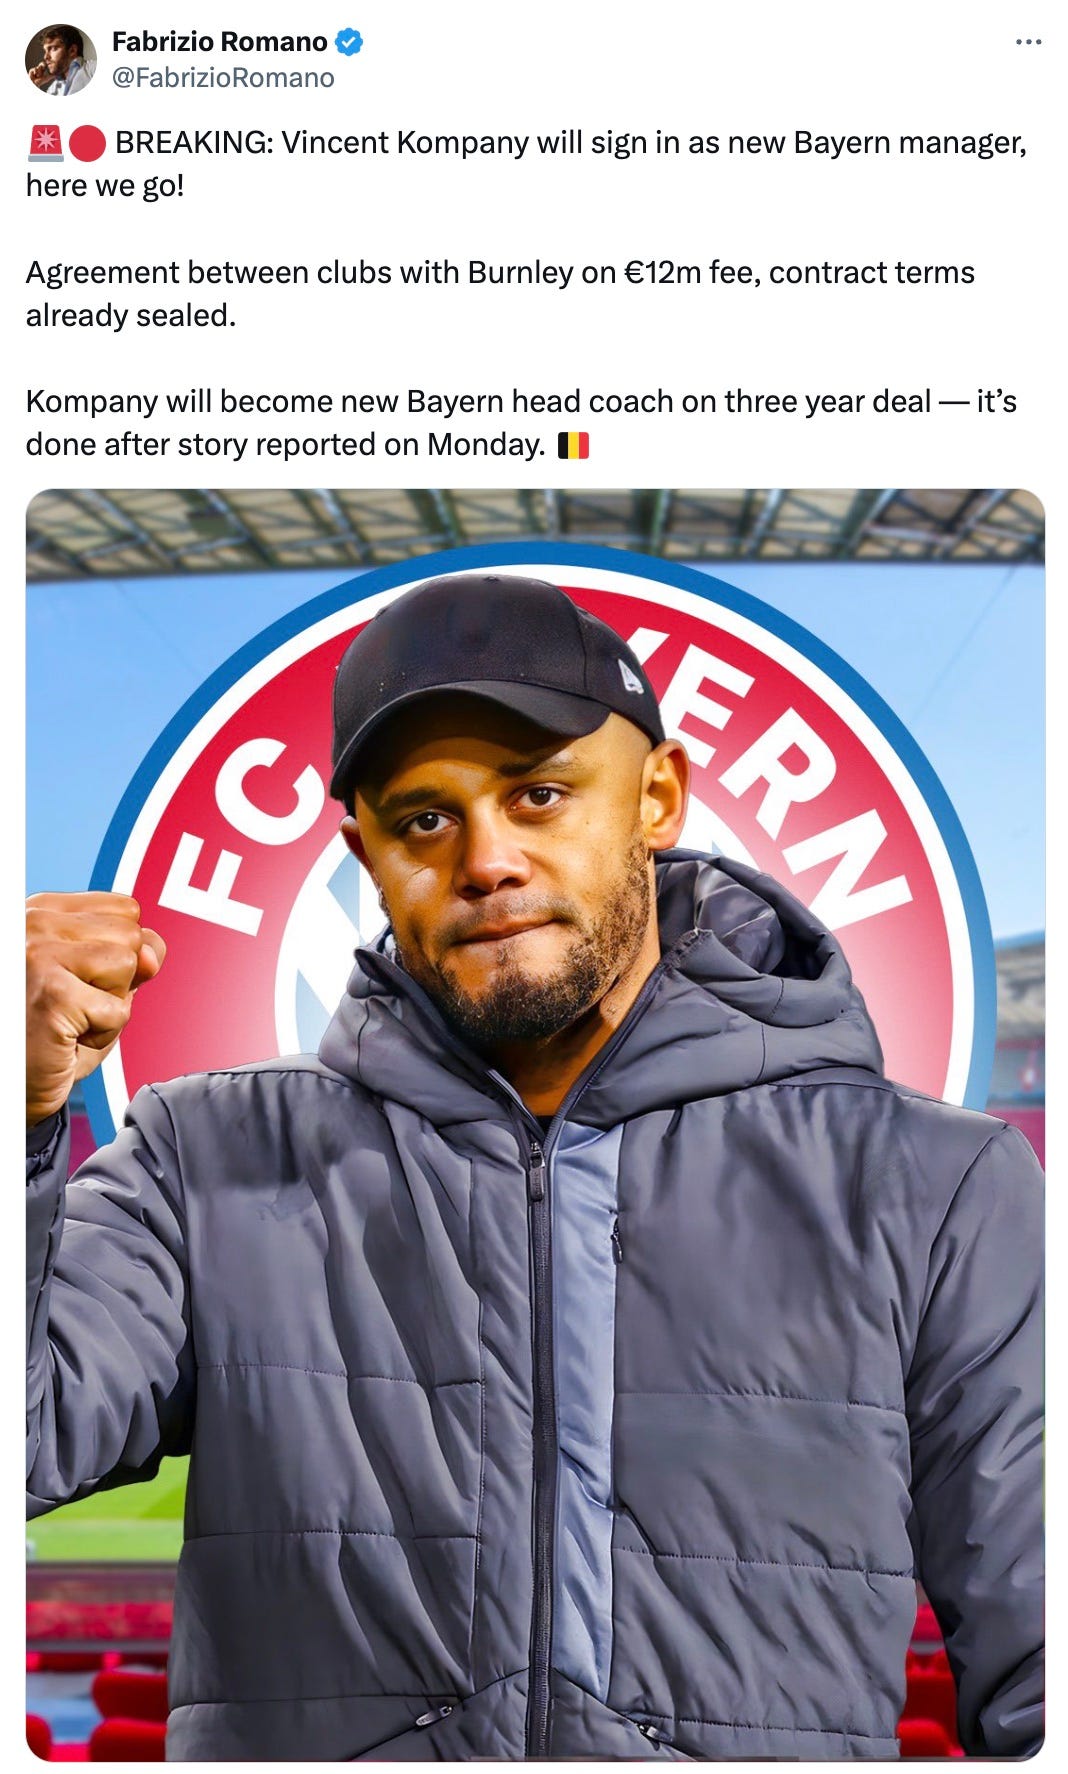 A tweet by Fabrizio Romano about Vincent Kompany joining Bayern Munich as manager